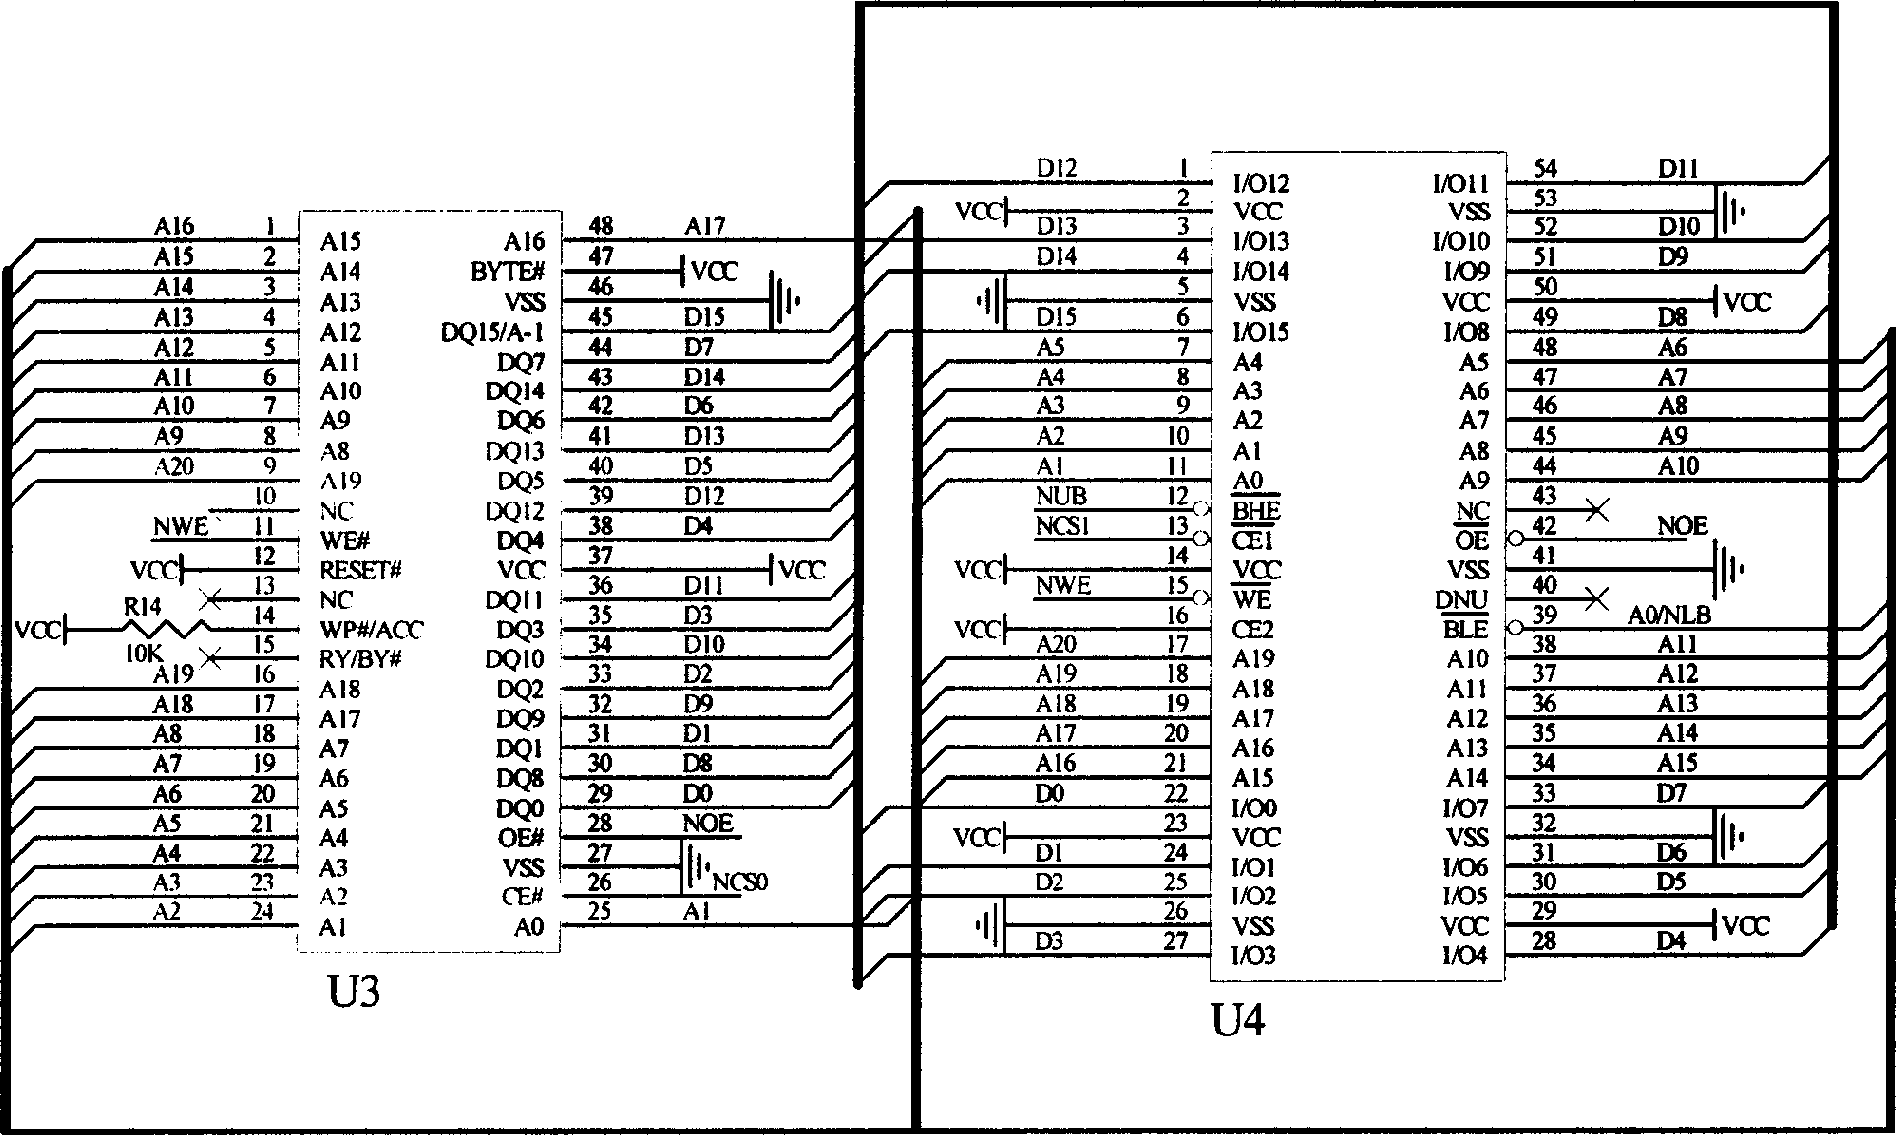 Bar code reader based on Ethernet